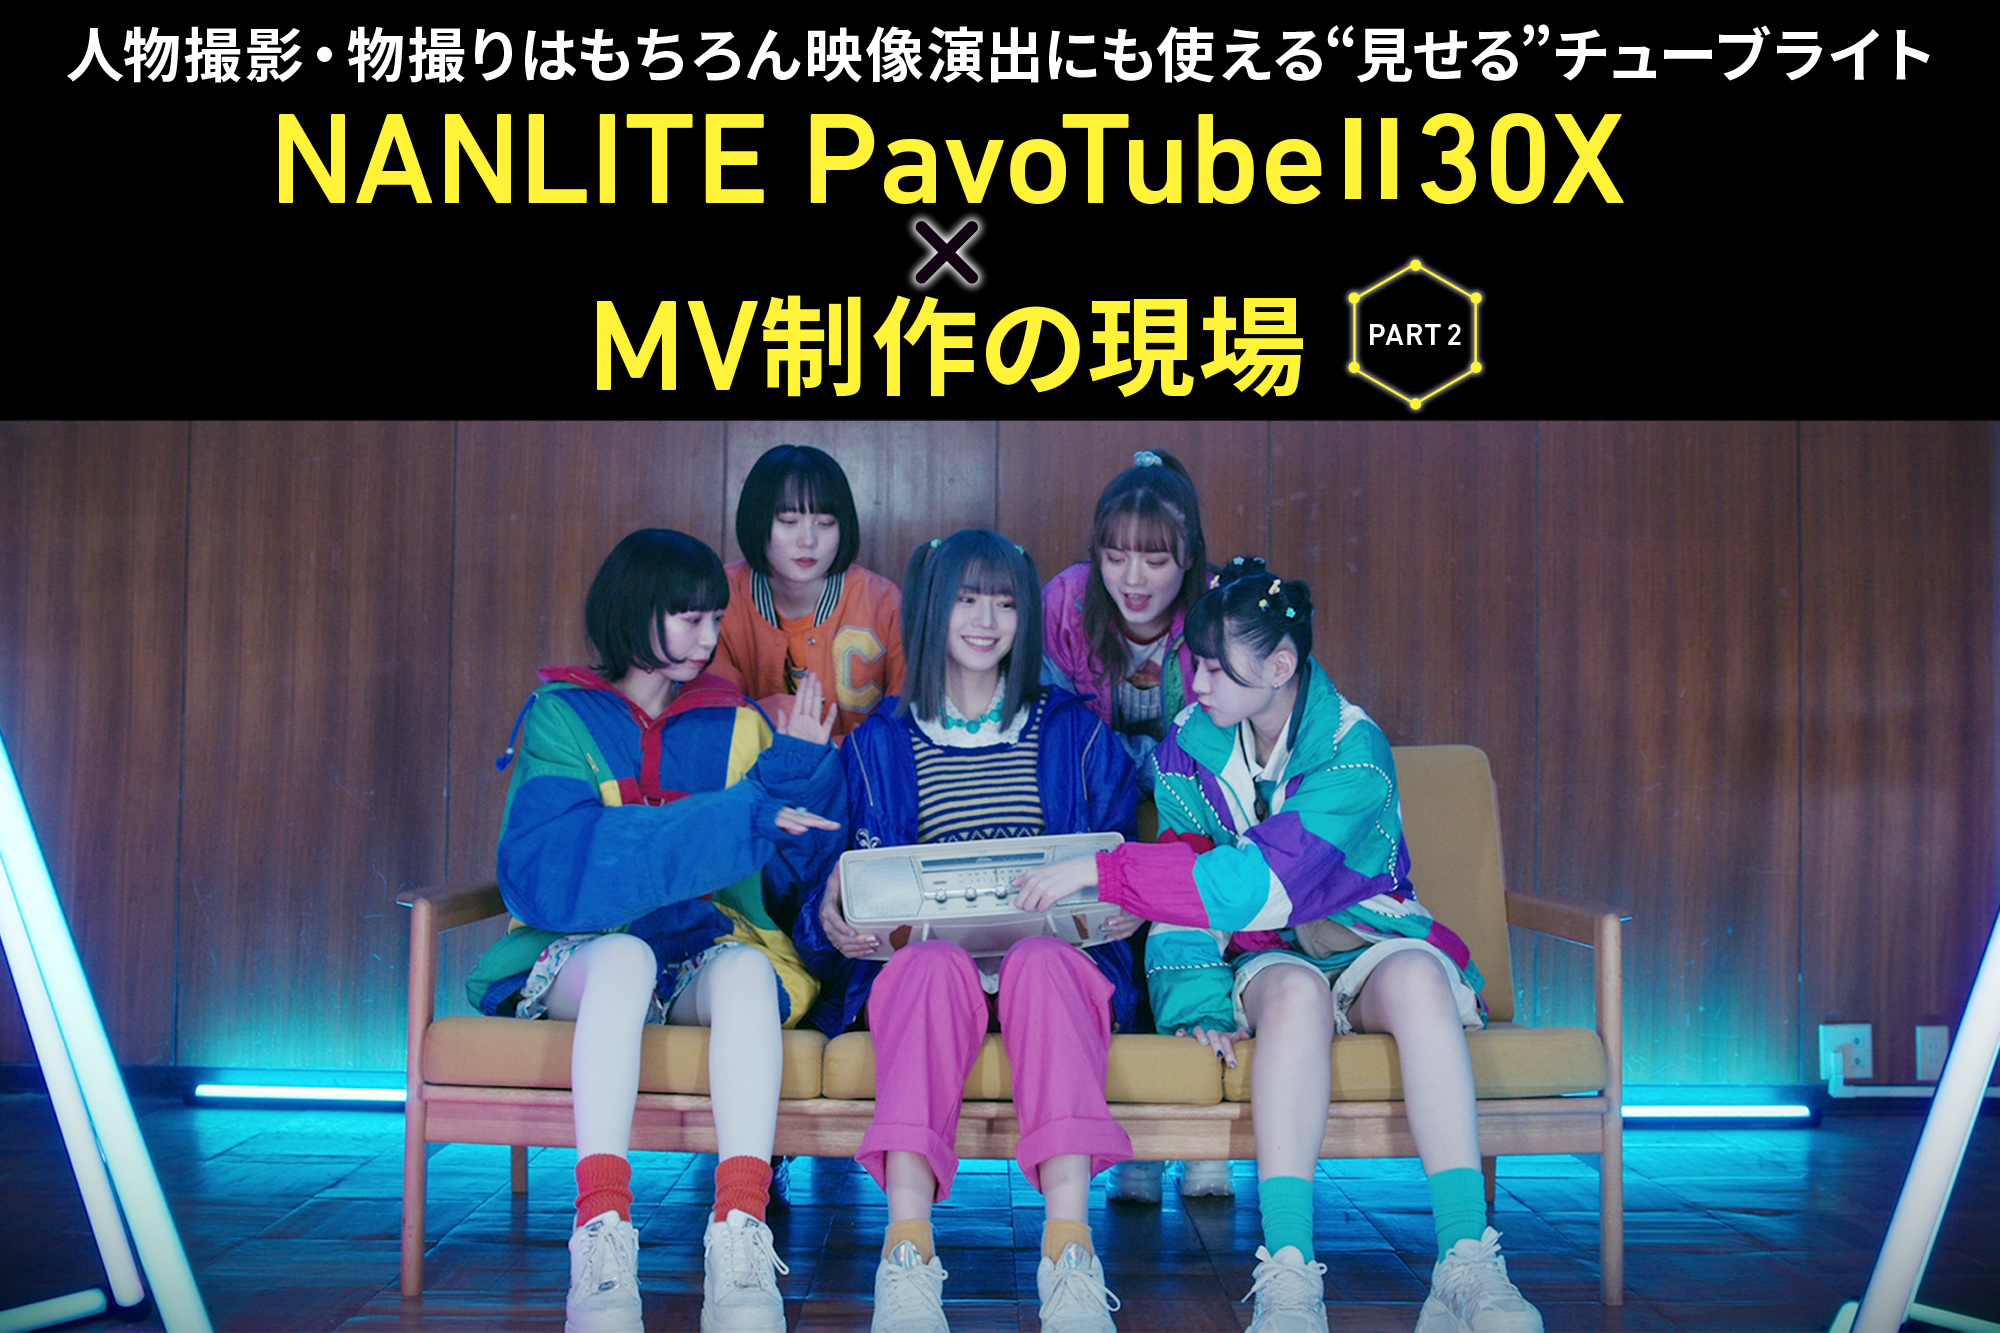 NANLITE PavoTubeⅡX をミュージックビデオの現場に投入！ 照明技師